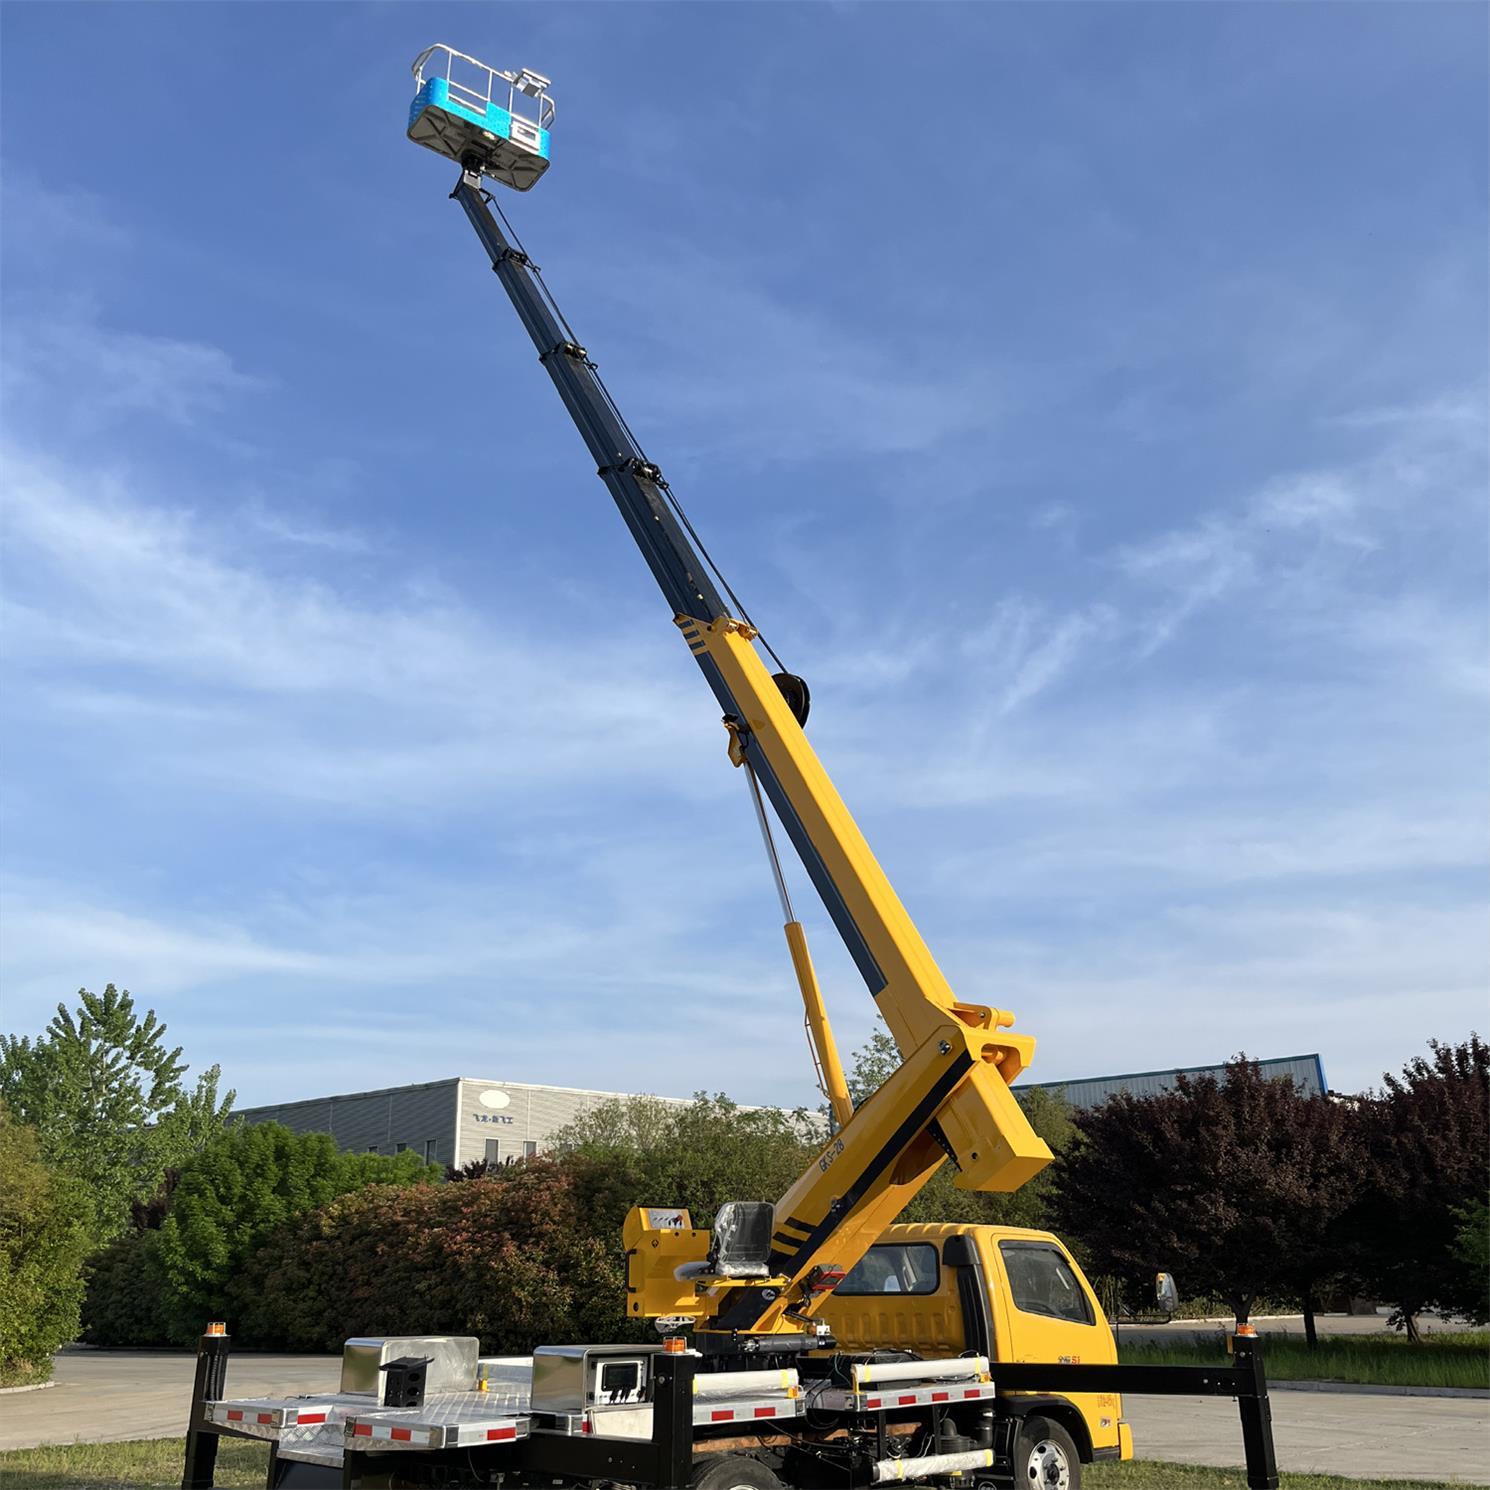 Подъем заграждения мобильной воздушной рабочей платформы телескопичный с платформой вок высоты корзины